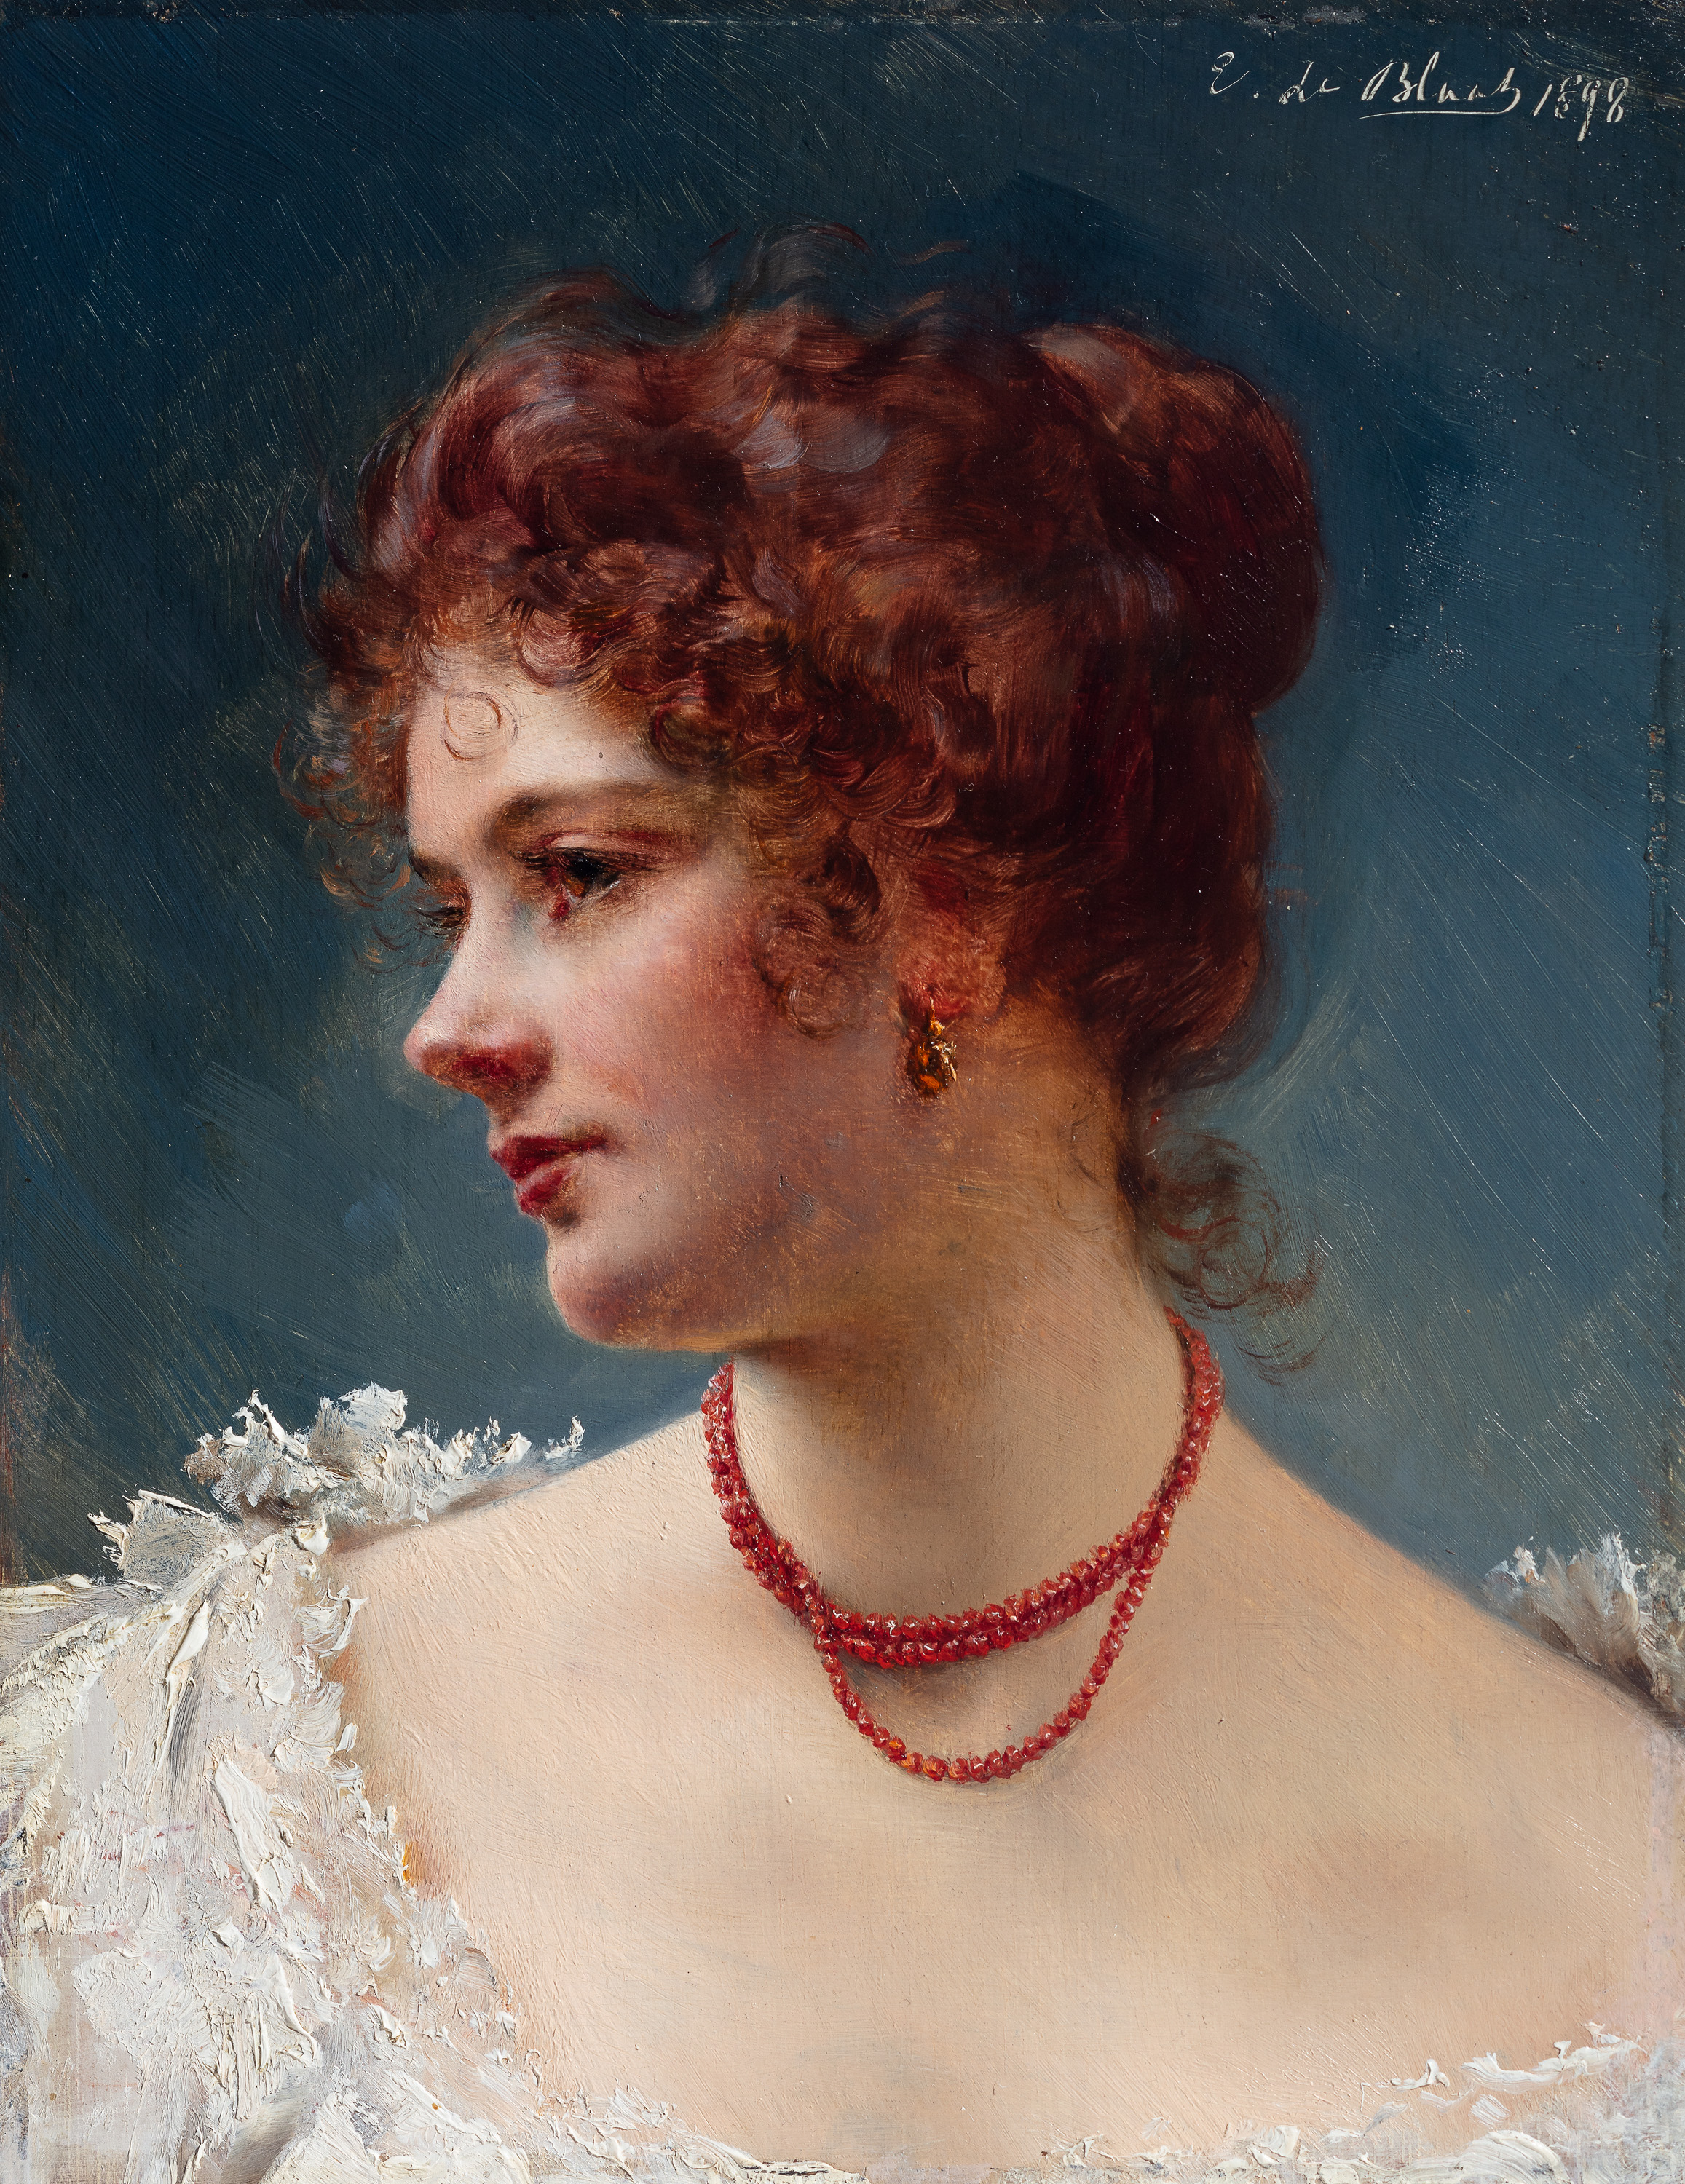 Painting: Eugen von Blaas, Portrait einer Schönen (Portrait of a beautiful woman), 1898